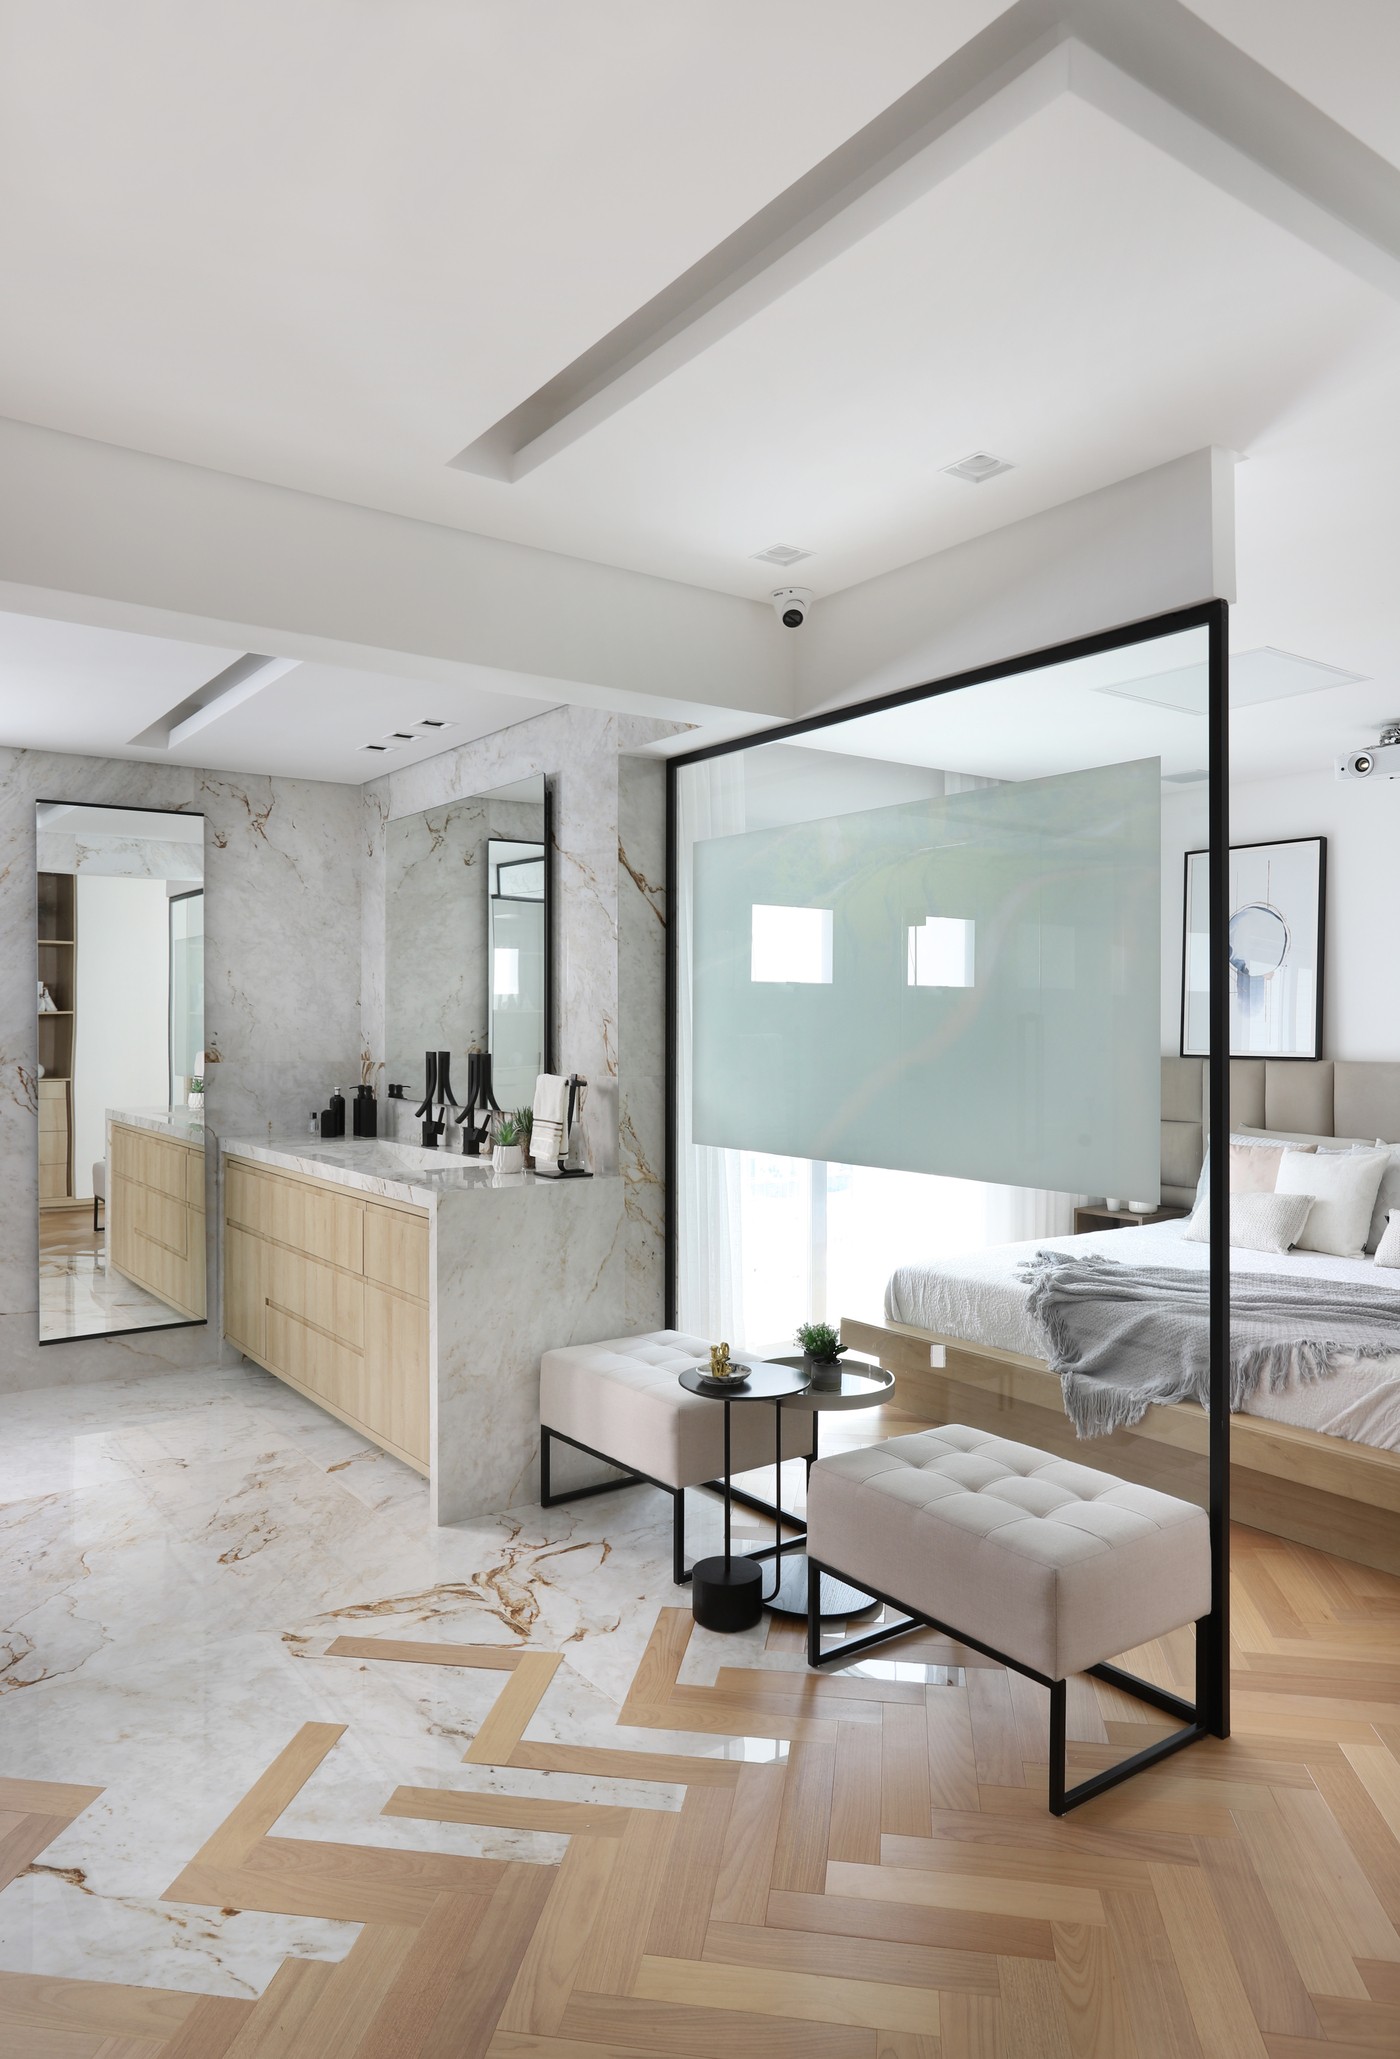 Décor do dia: banheiro integrado ao quarto tem muita luminosidade natural e tons claros (Foto: Mariana Orsi)